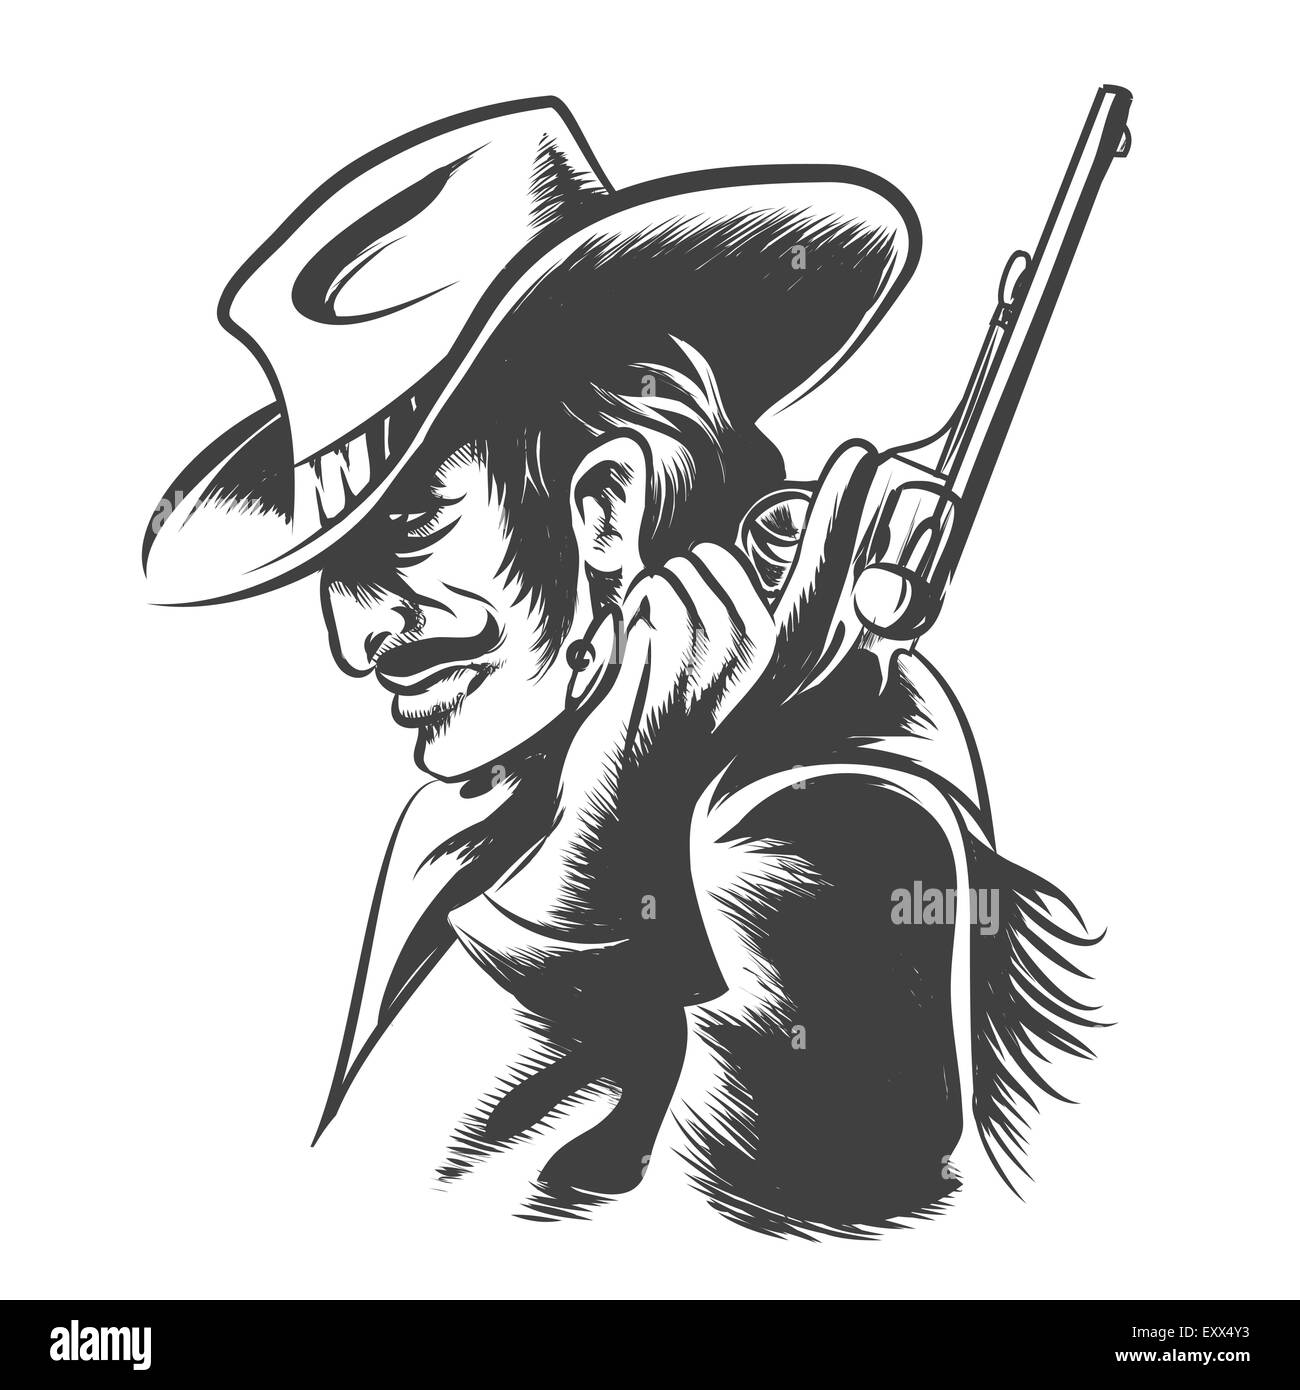 Mann in Cowboy-Kleidung mit Revolver in der Hand. Gravur-Stil. Monochrom auf weißem Hintergrund. Stock Vektor